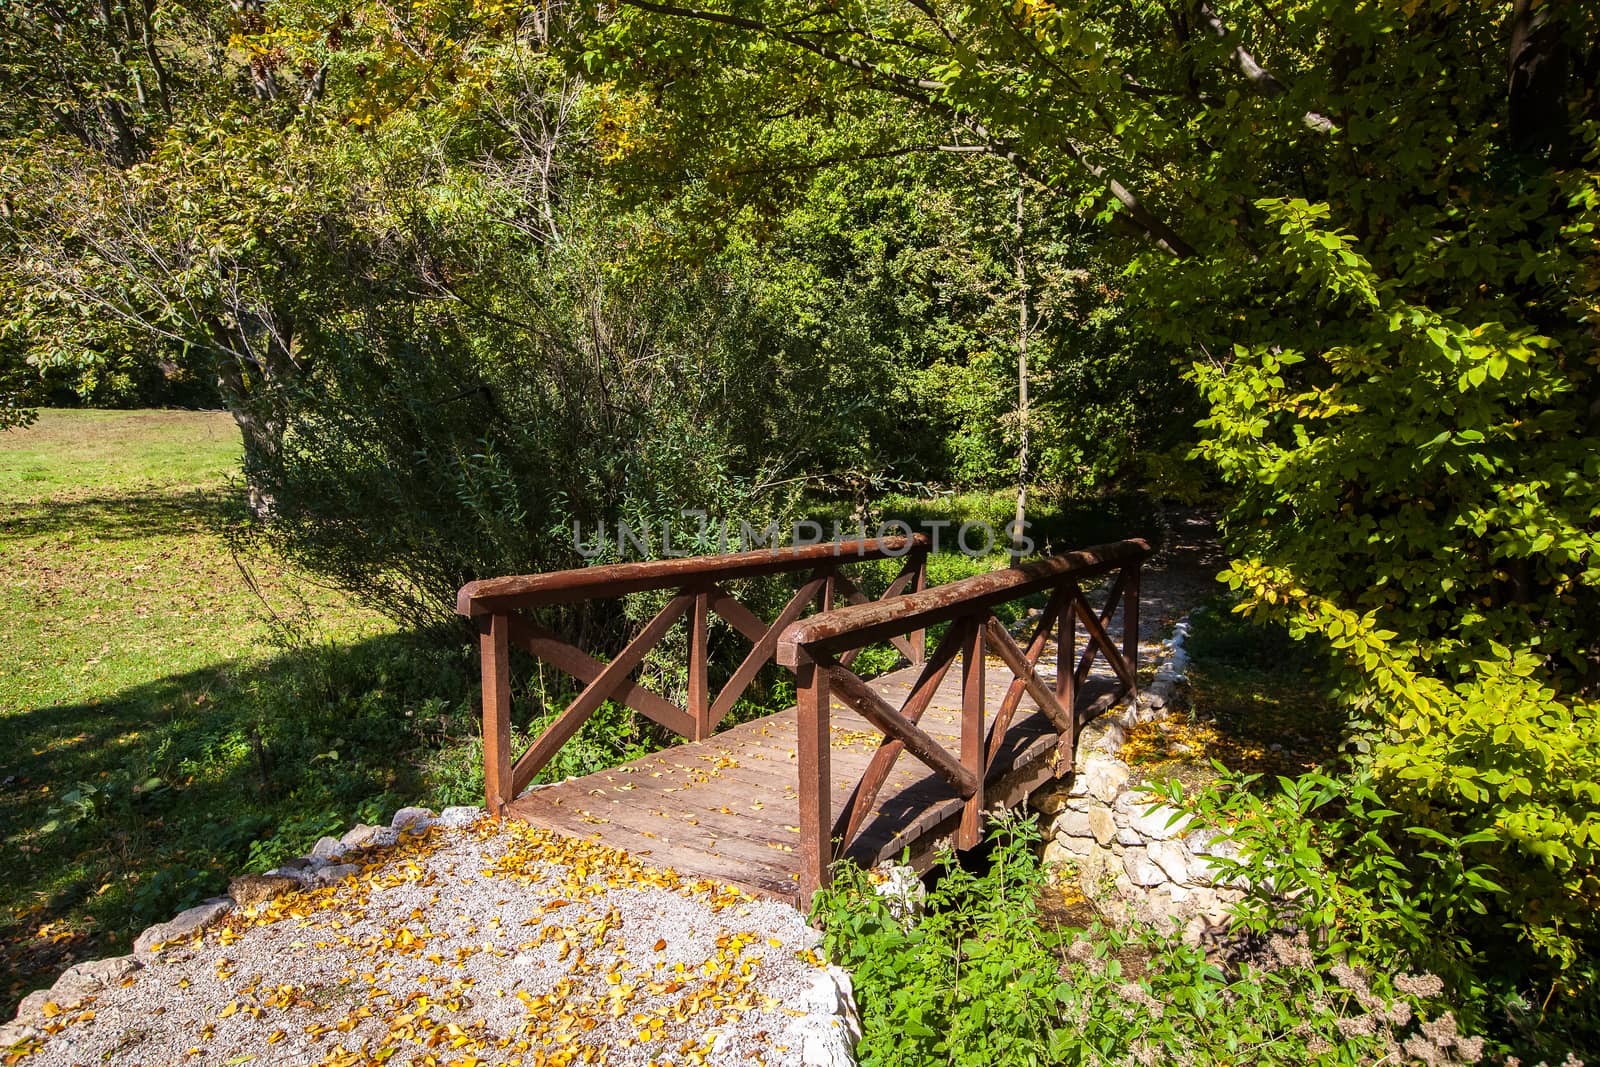 Wooden footbridge on an early fall day by Slast20